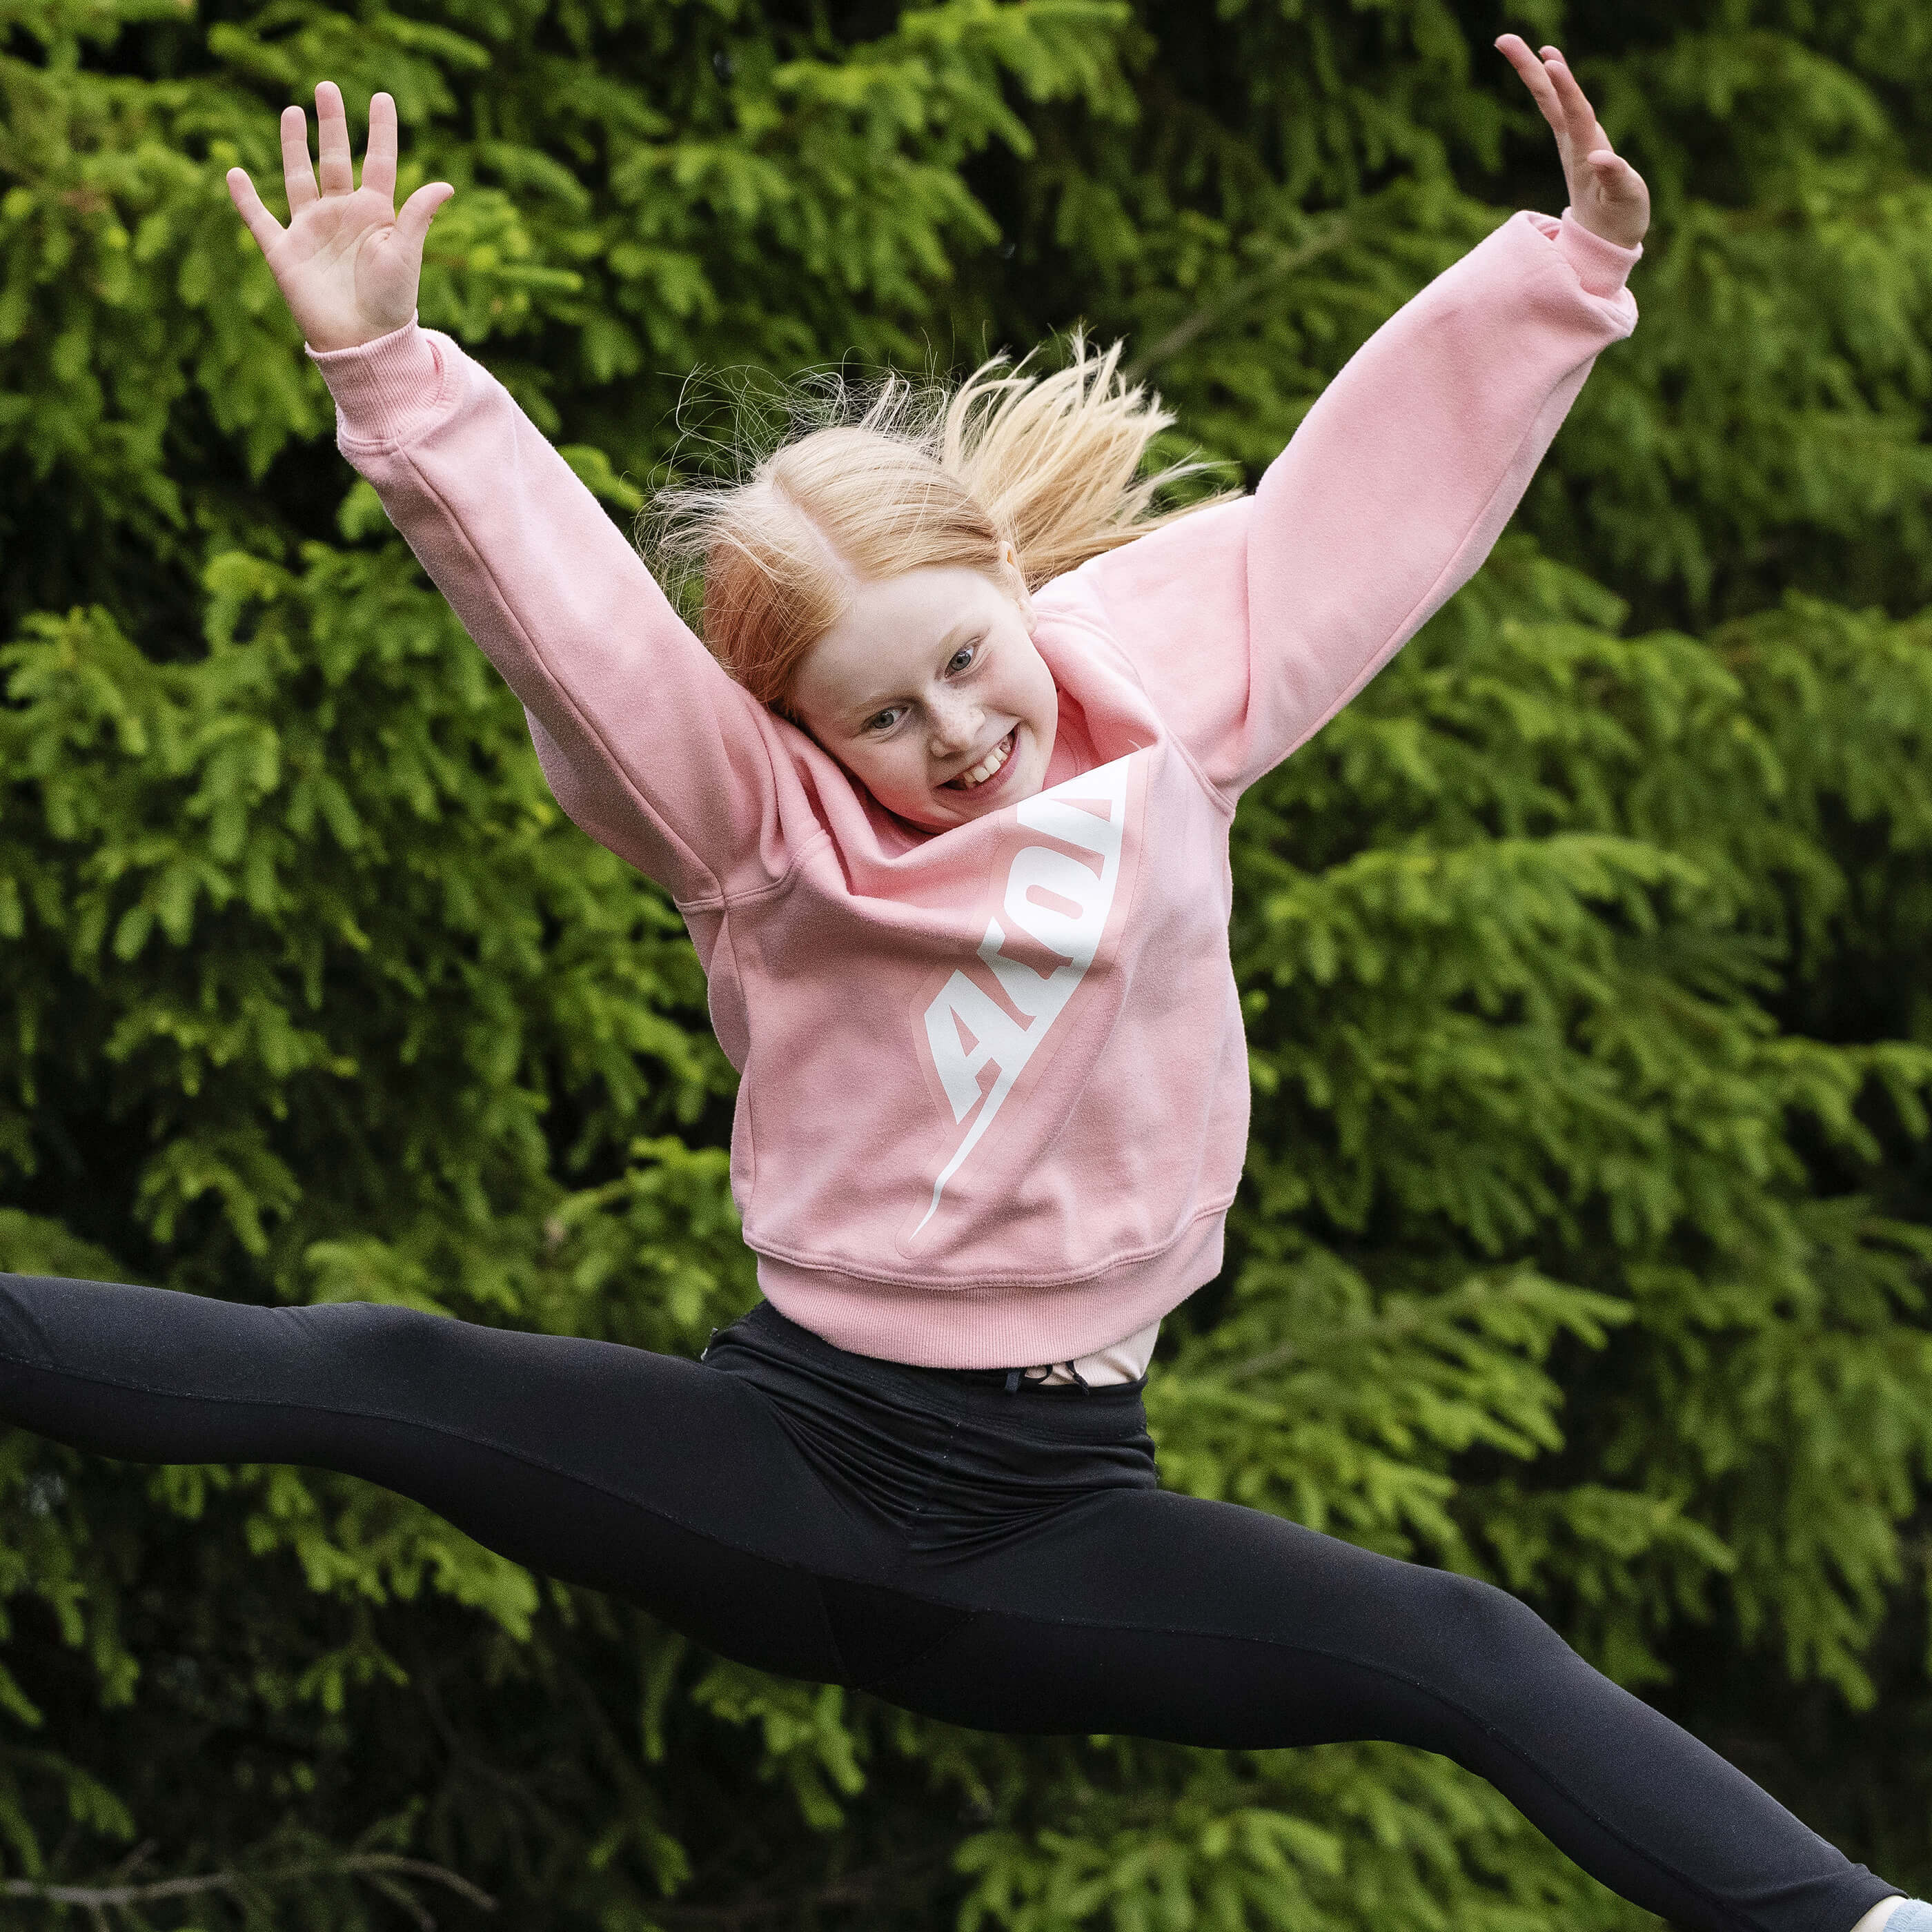 Une jeune fille heureuse, vêtue d'une chemise Acon, sautant sur un trampoline.